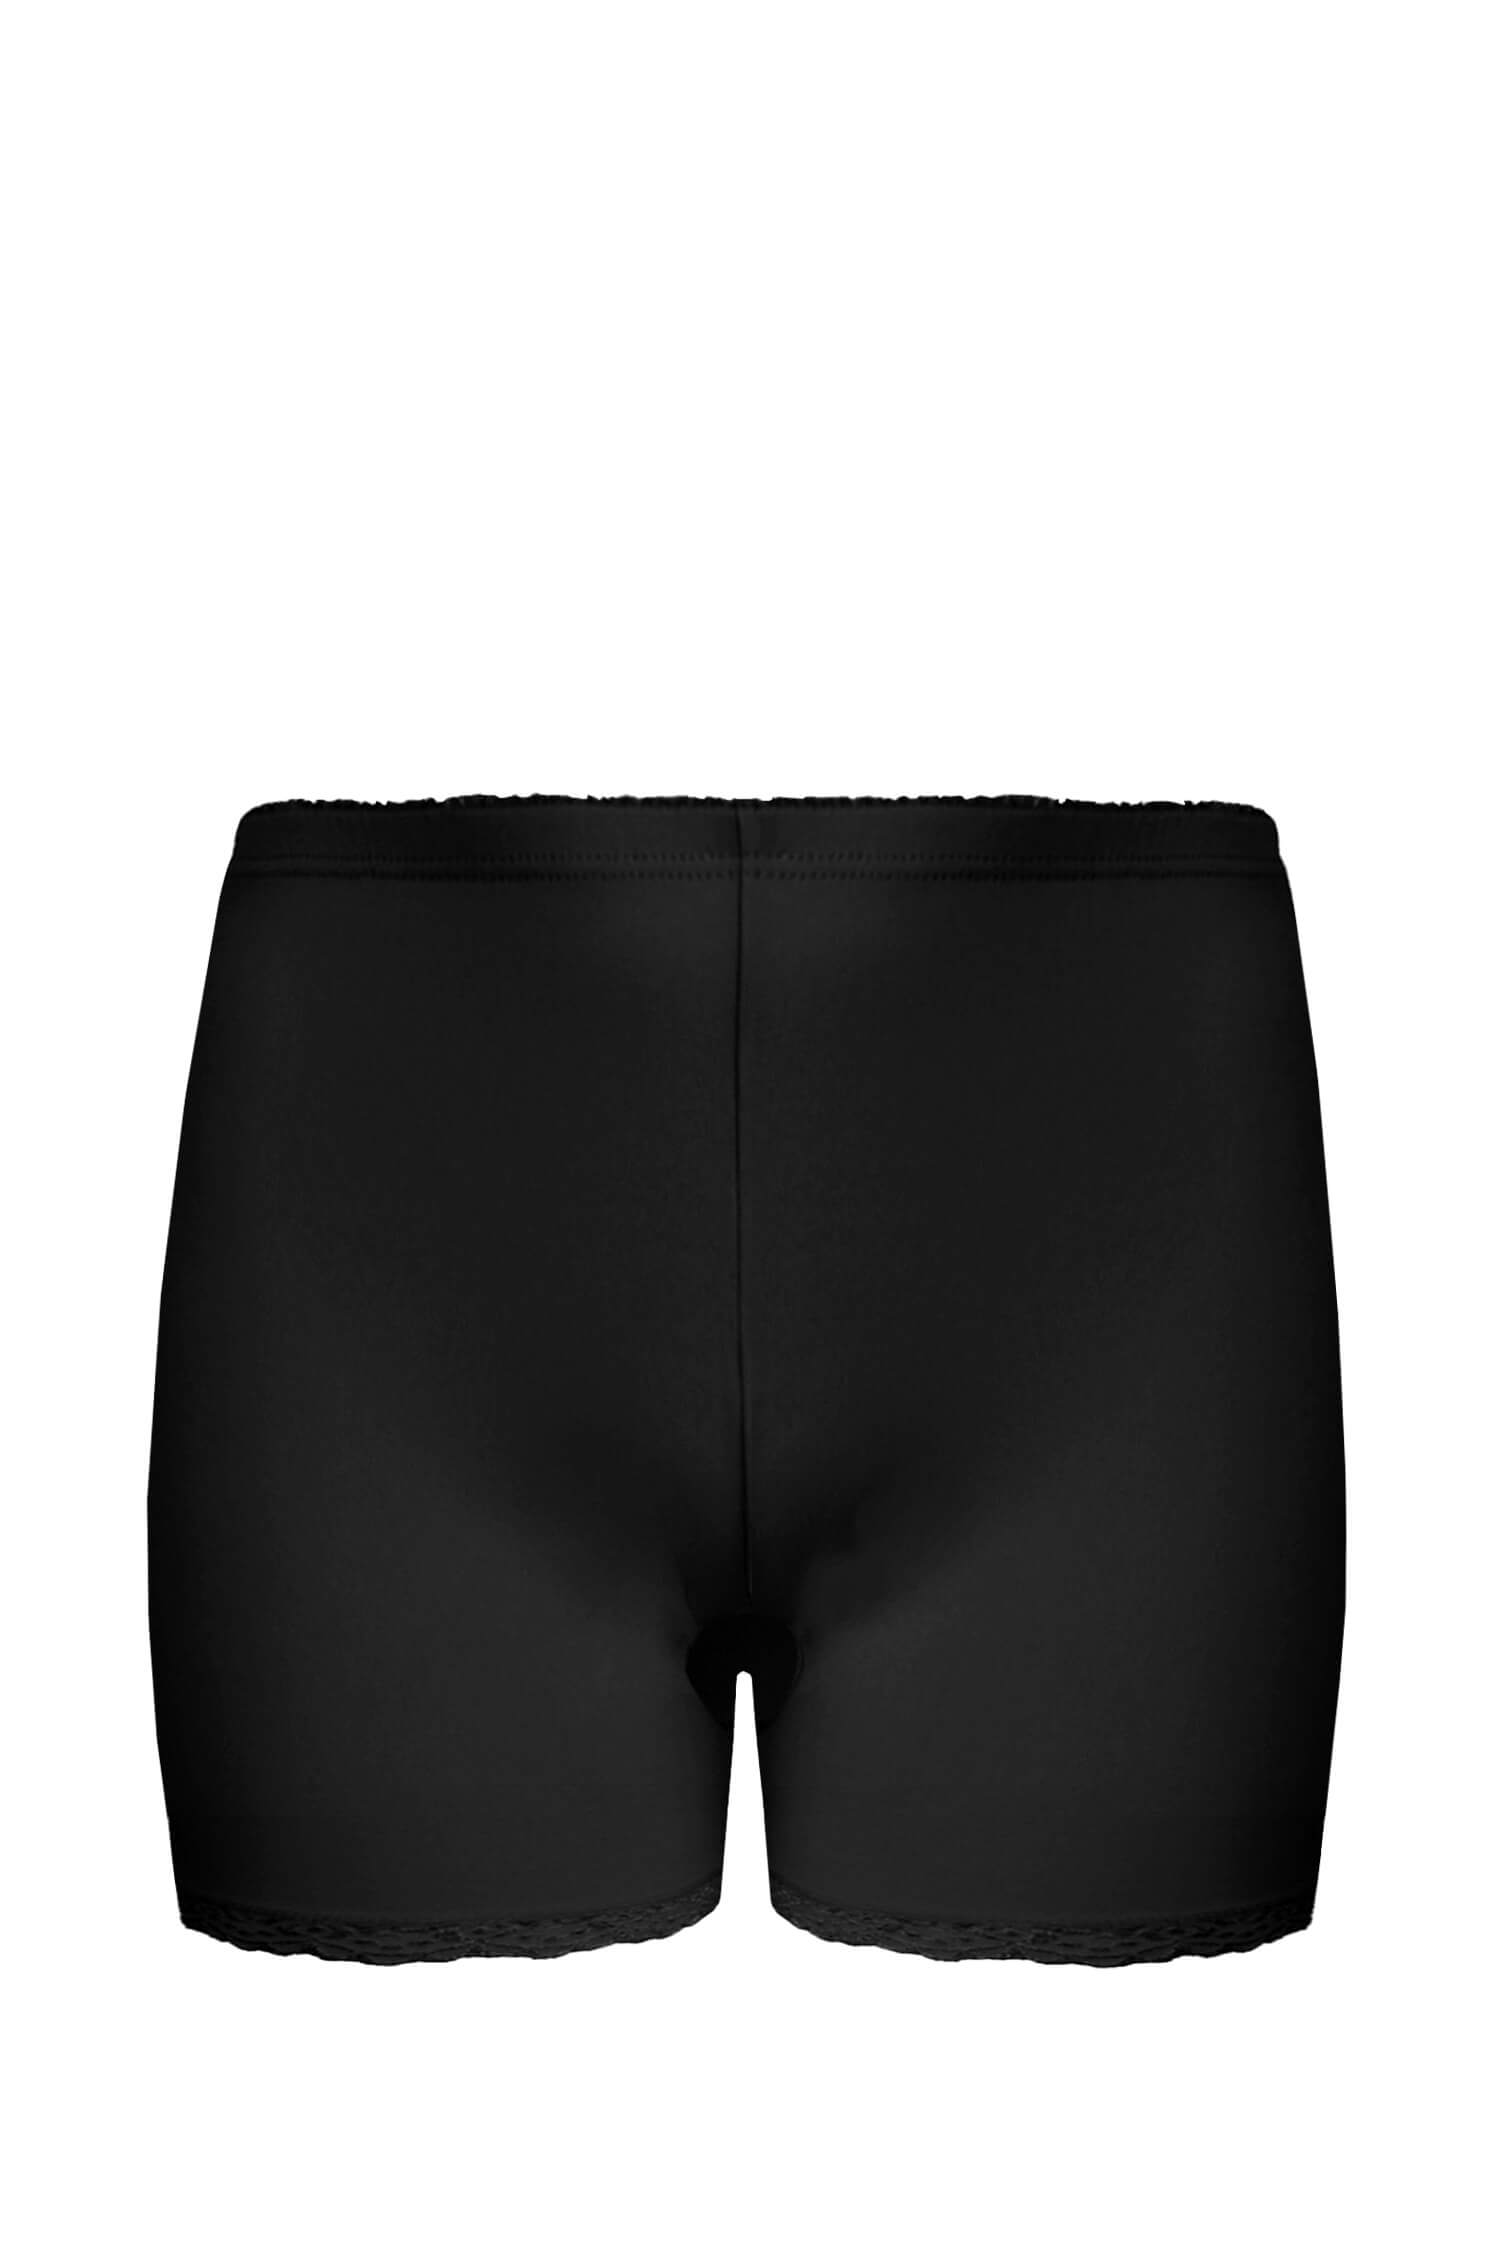 Helen kalhotky s nohavičkou krajka 703 L černá